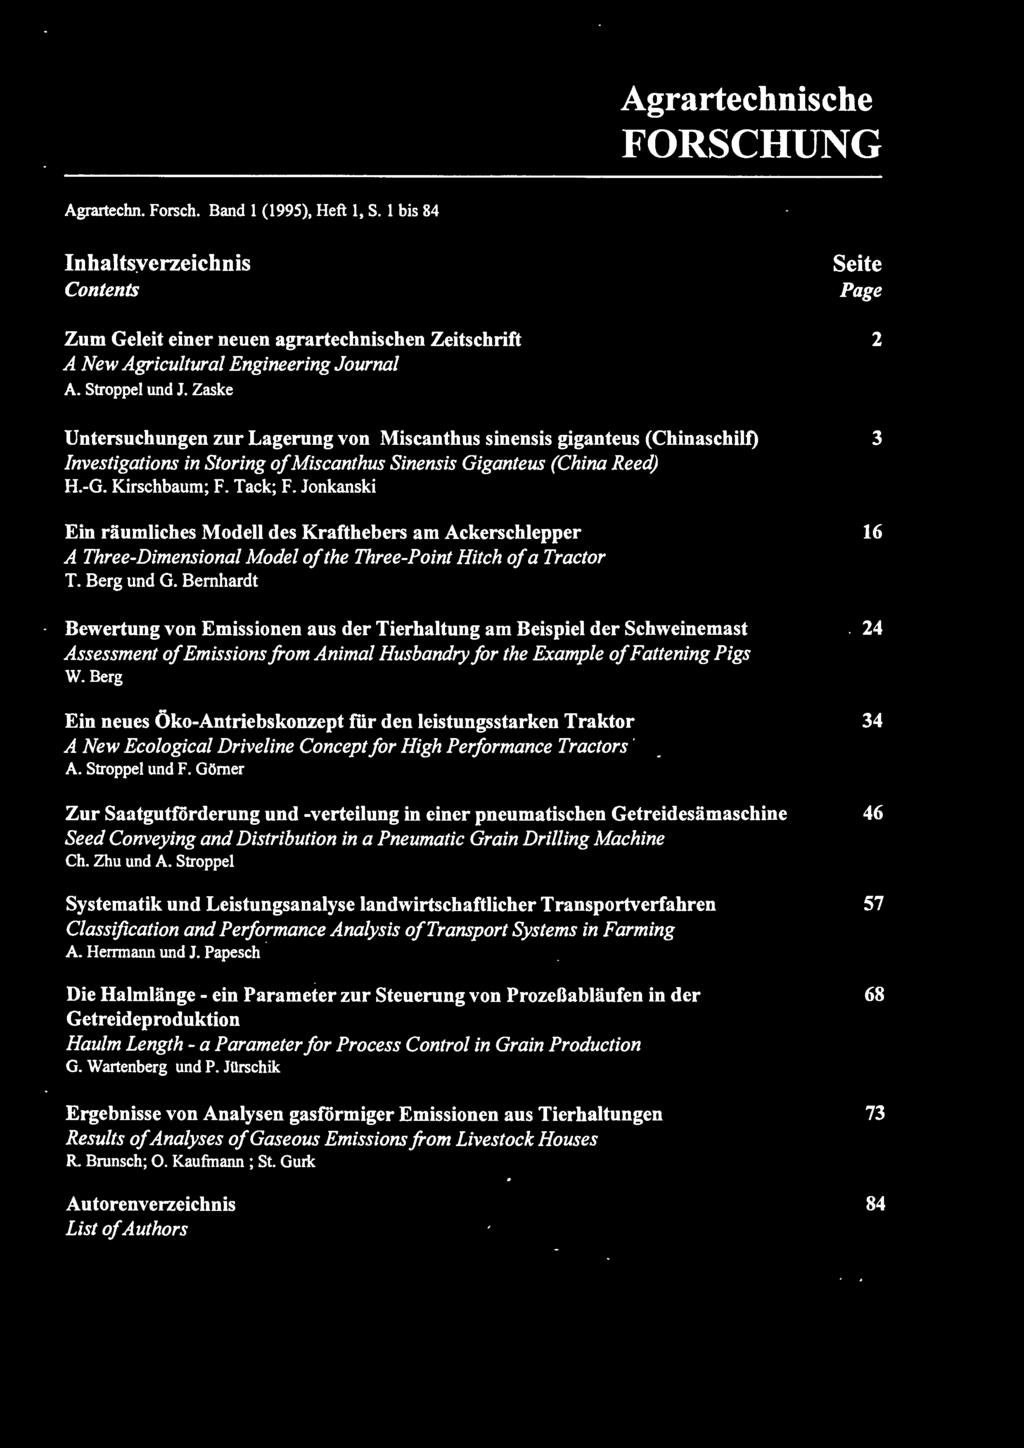 Zaske Seite Page 2 Untersuchungen zur Lagerung von Miscanthus sinensis giganteus (Chinaschilt) 3 Investigations in Storing of Miscanthus Sinensis Giganteus (China Reed) H.-G. Kirschbaum; F. Tack; F.